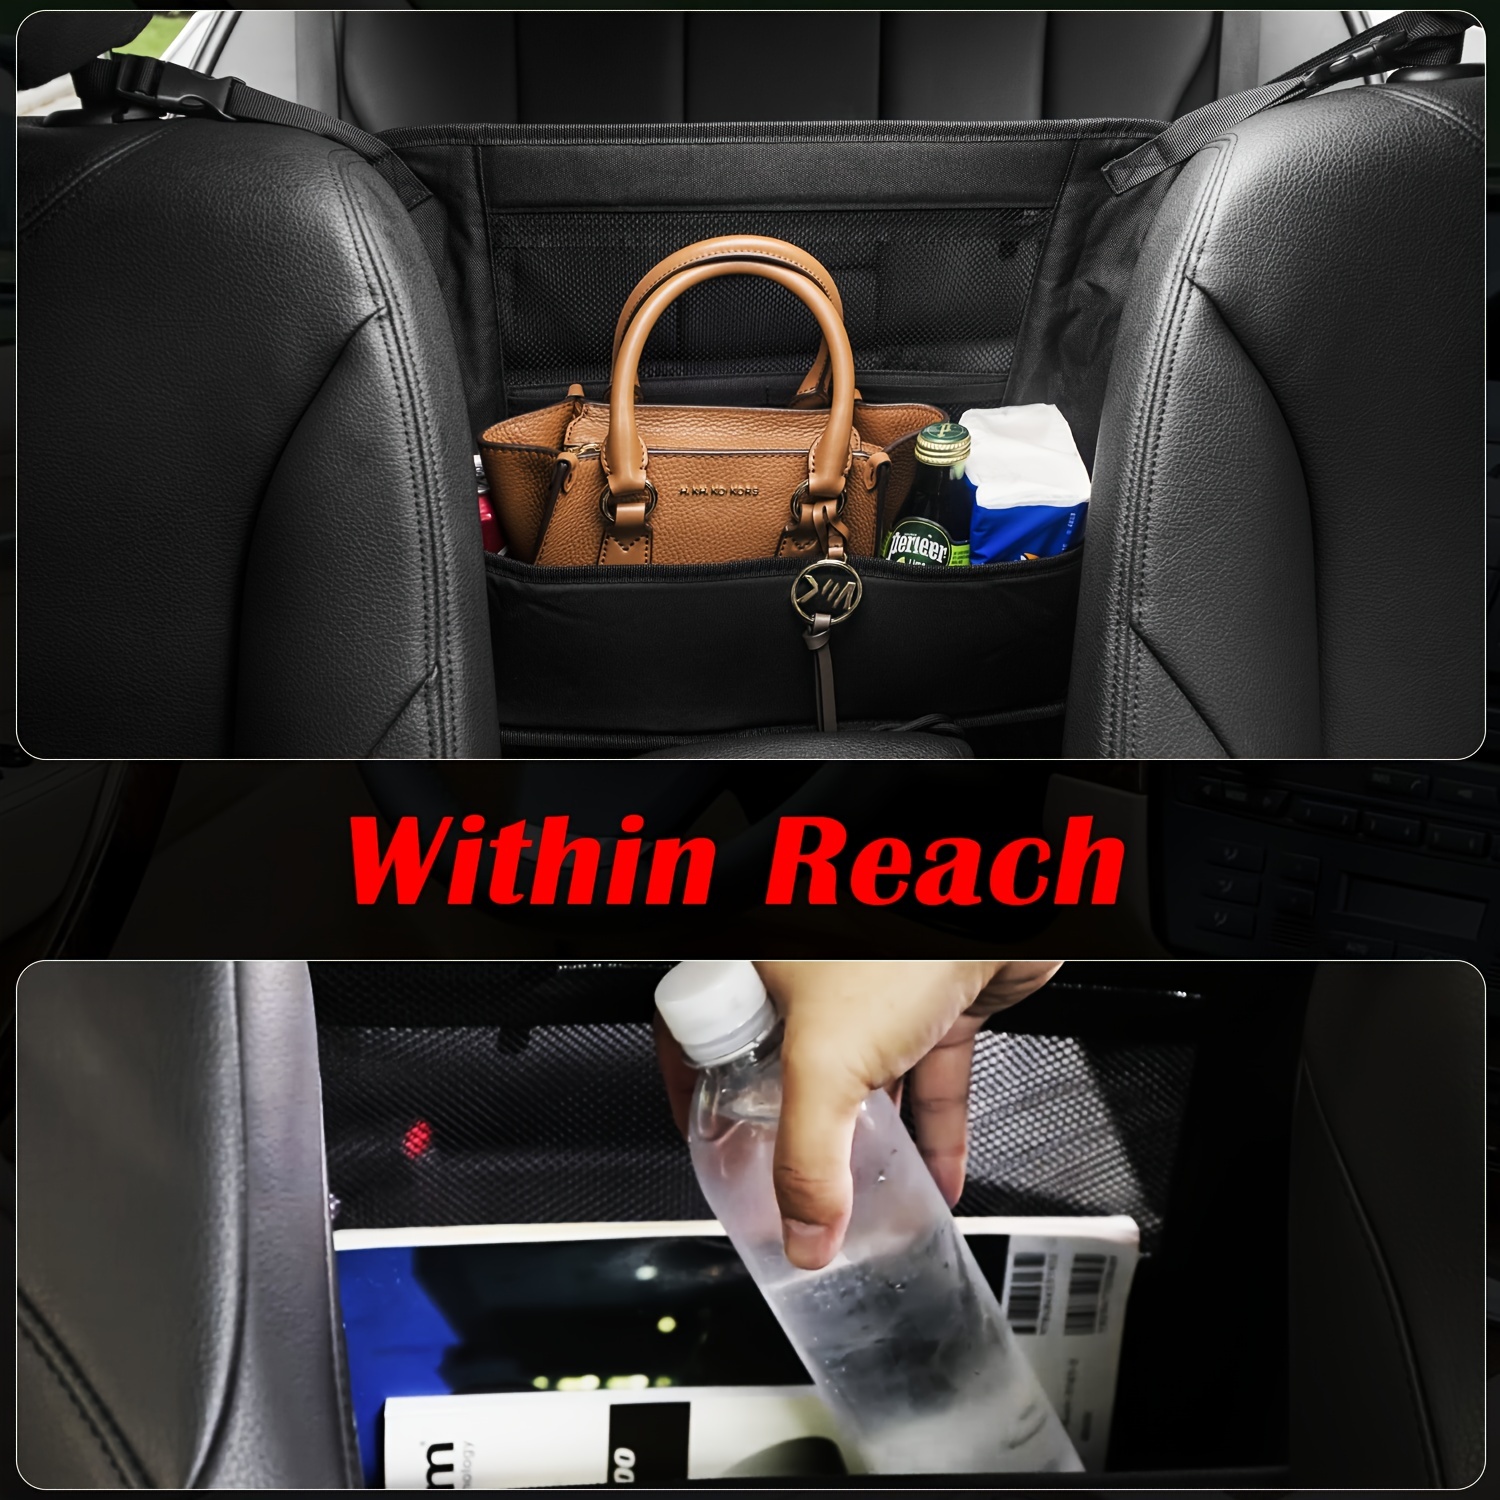 Get Car Boot Storage Foldable Bag Organiser from DealatCity Store, Dealatcity